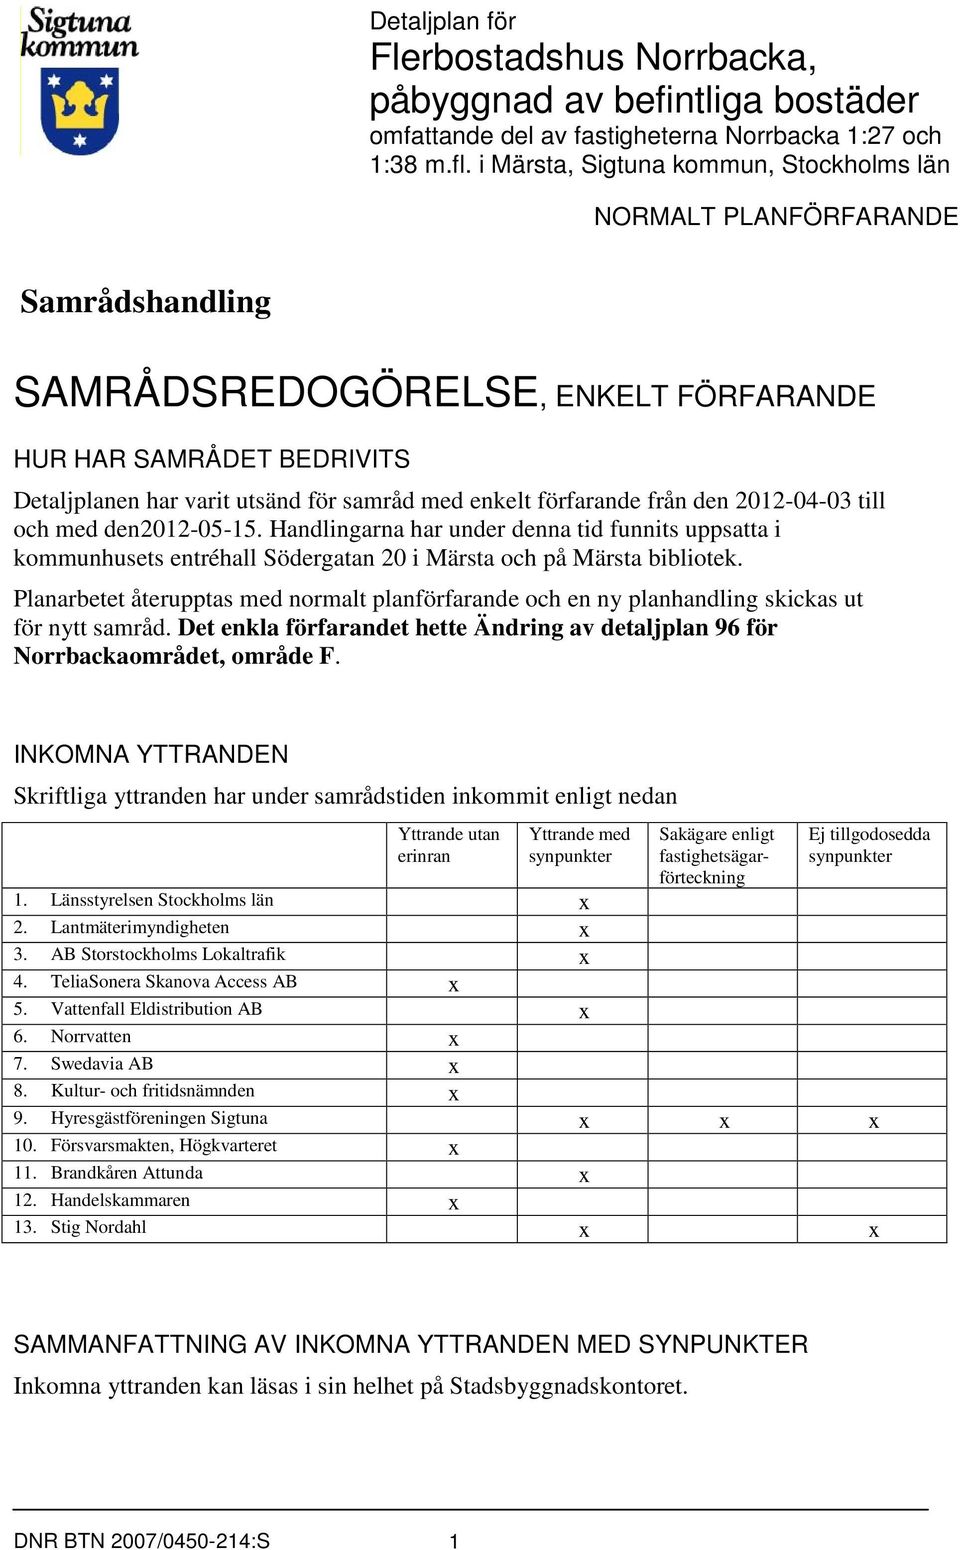 förfarande från den 2012-04-03 till och med den2012-05-15. Handlingarna har under denna tid funnits uppsatta i kommunhusets entréhall Södergatan 20 i Märsta och på Märsta bibliotek.